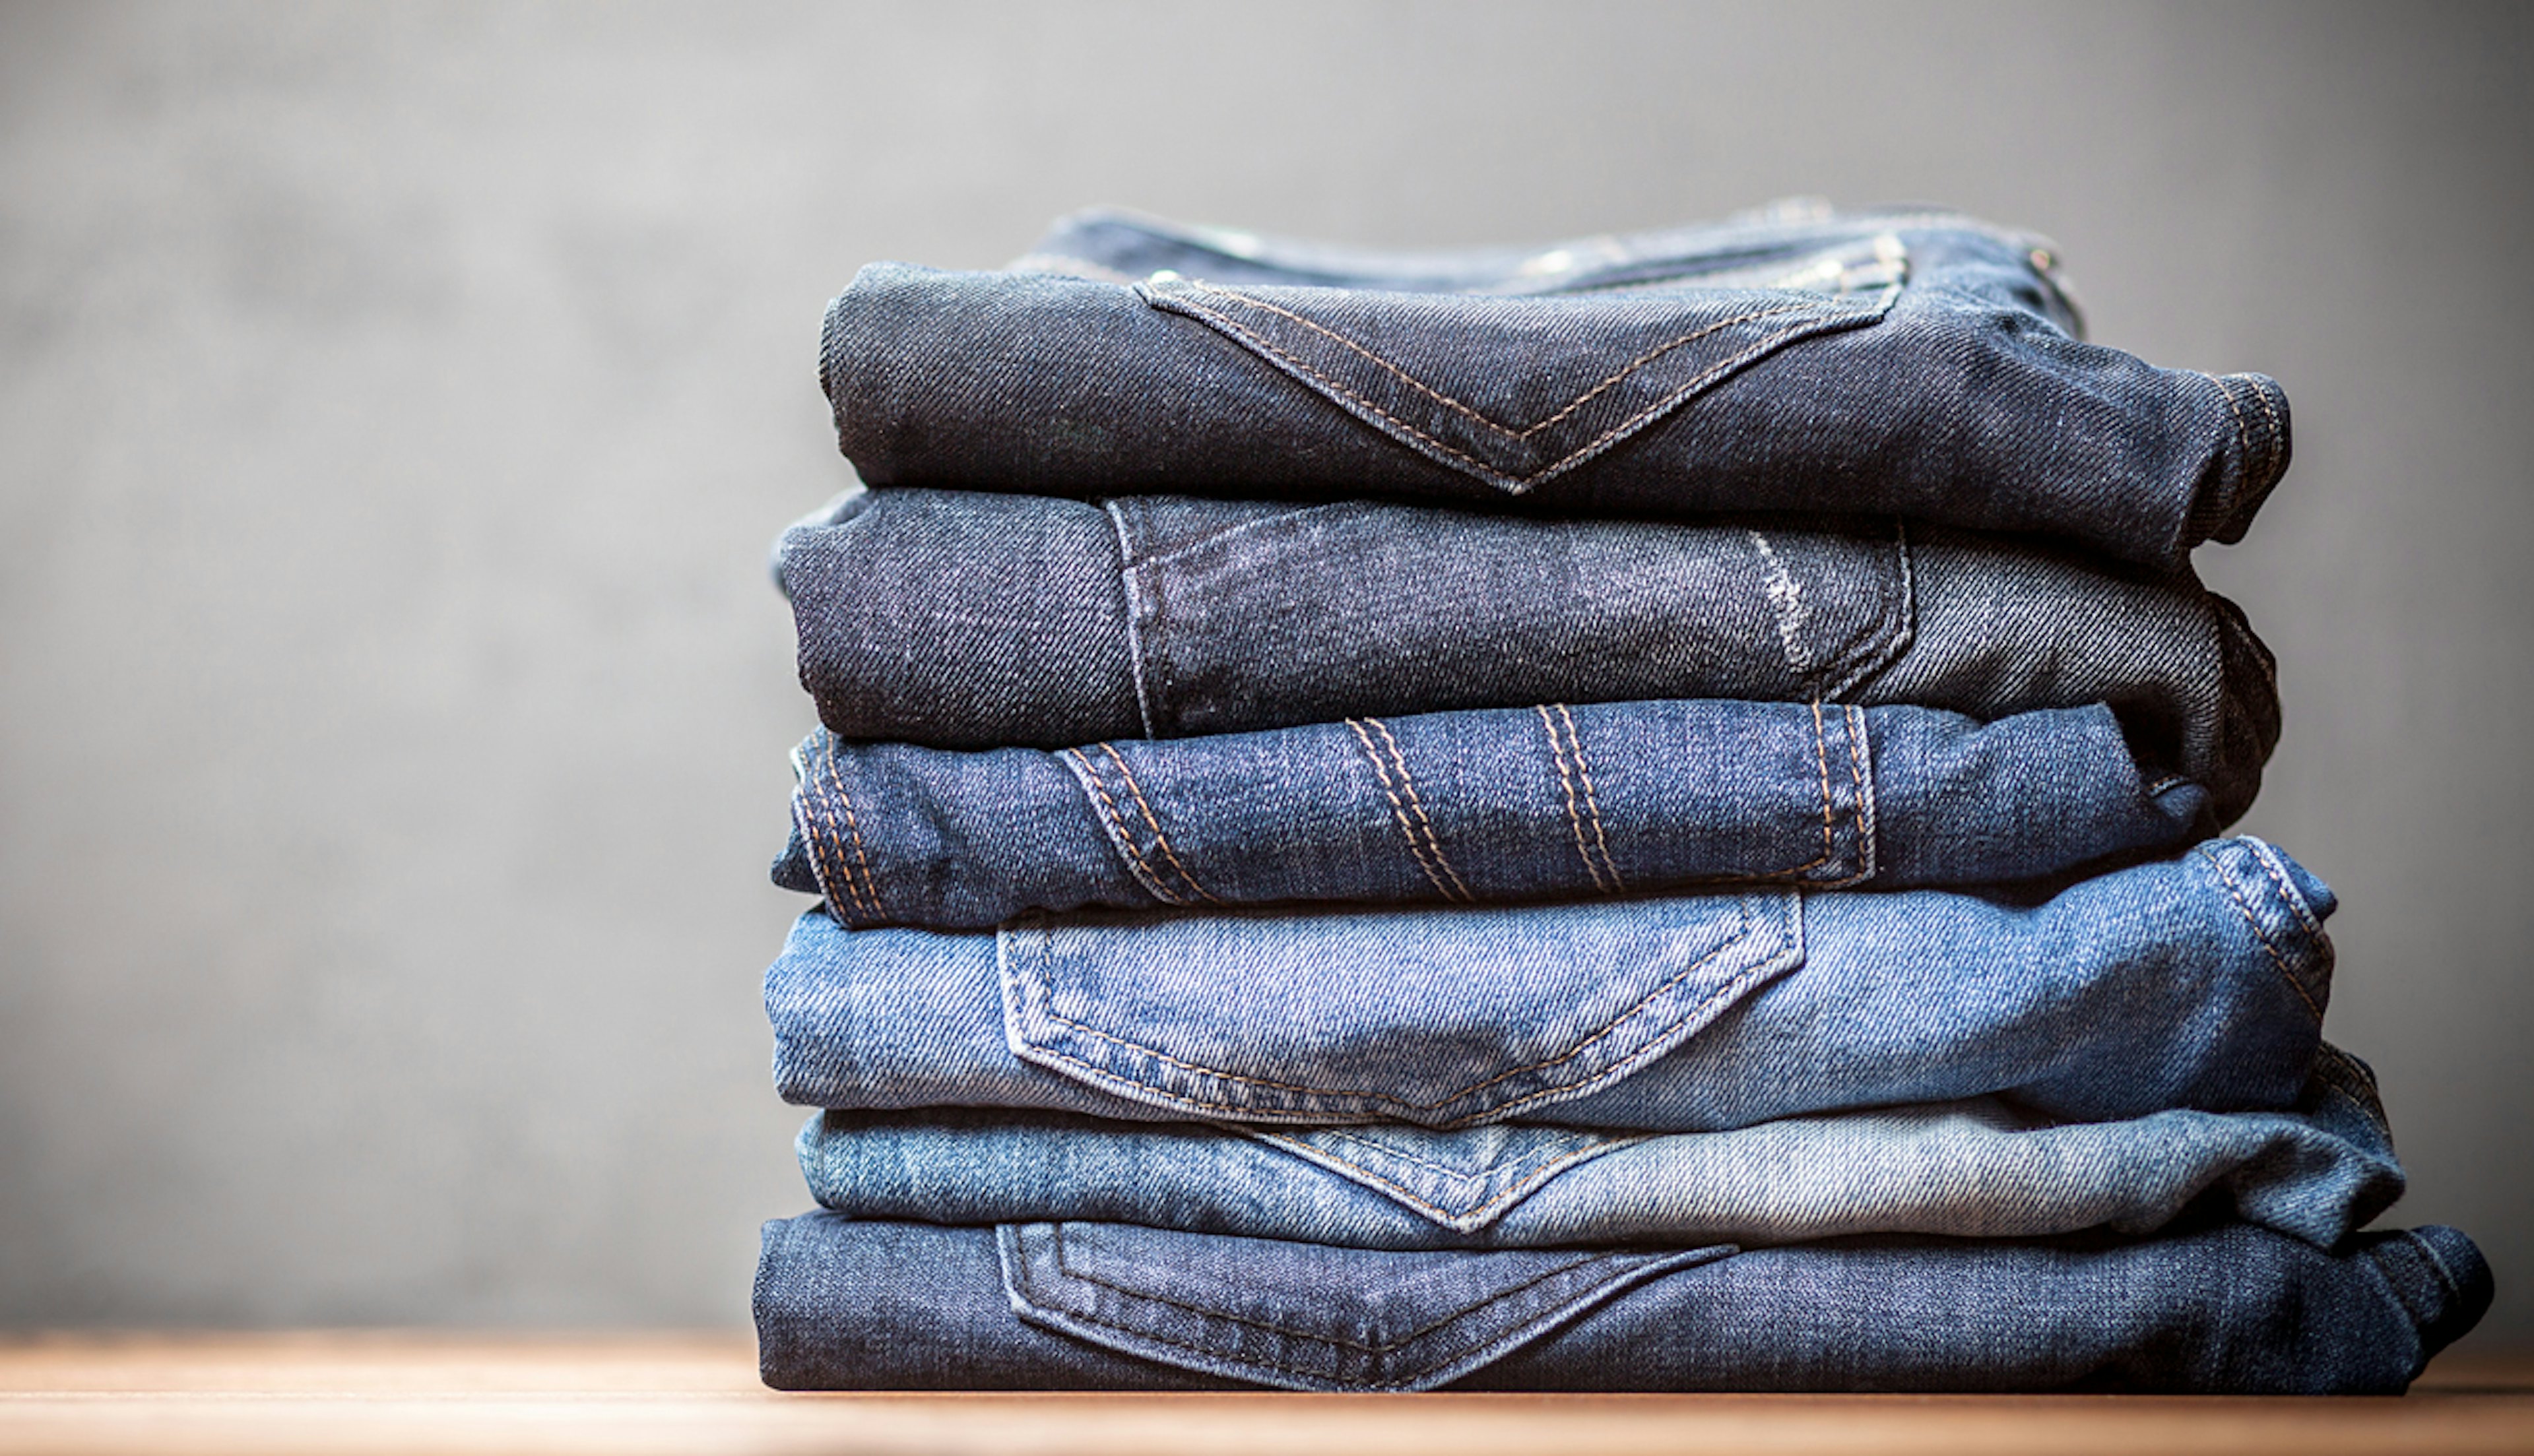 Jeans-programma: speciaal voor spijkerbroeken of denim jasjes.